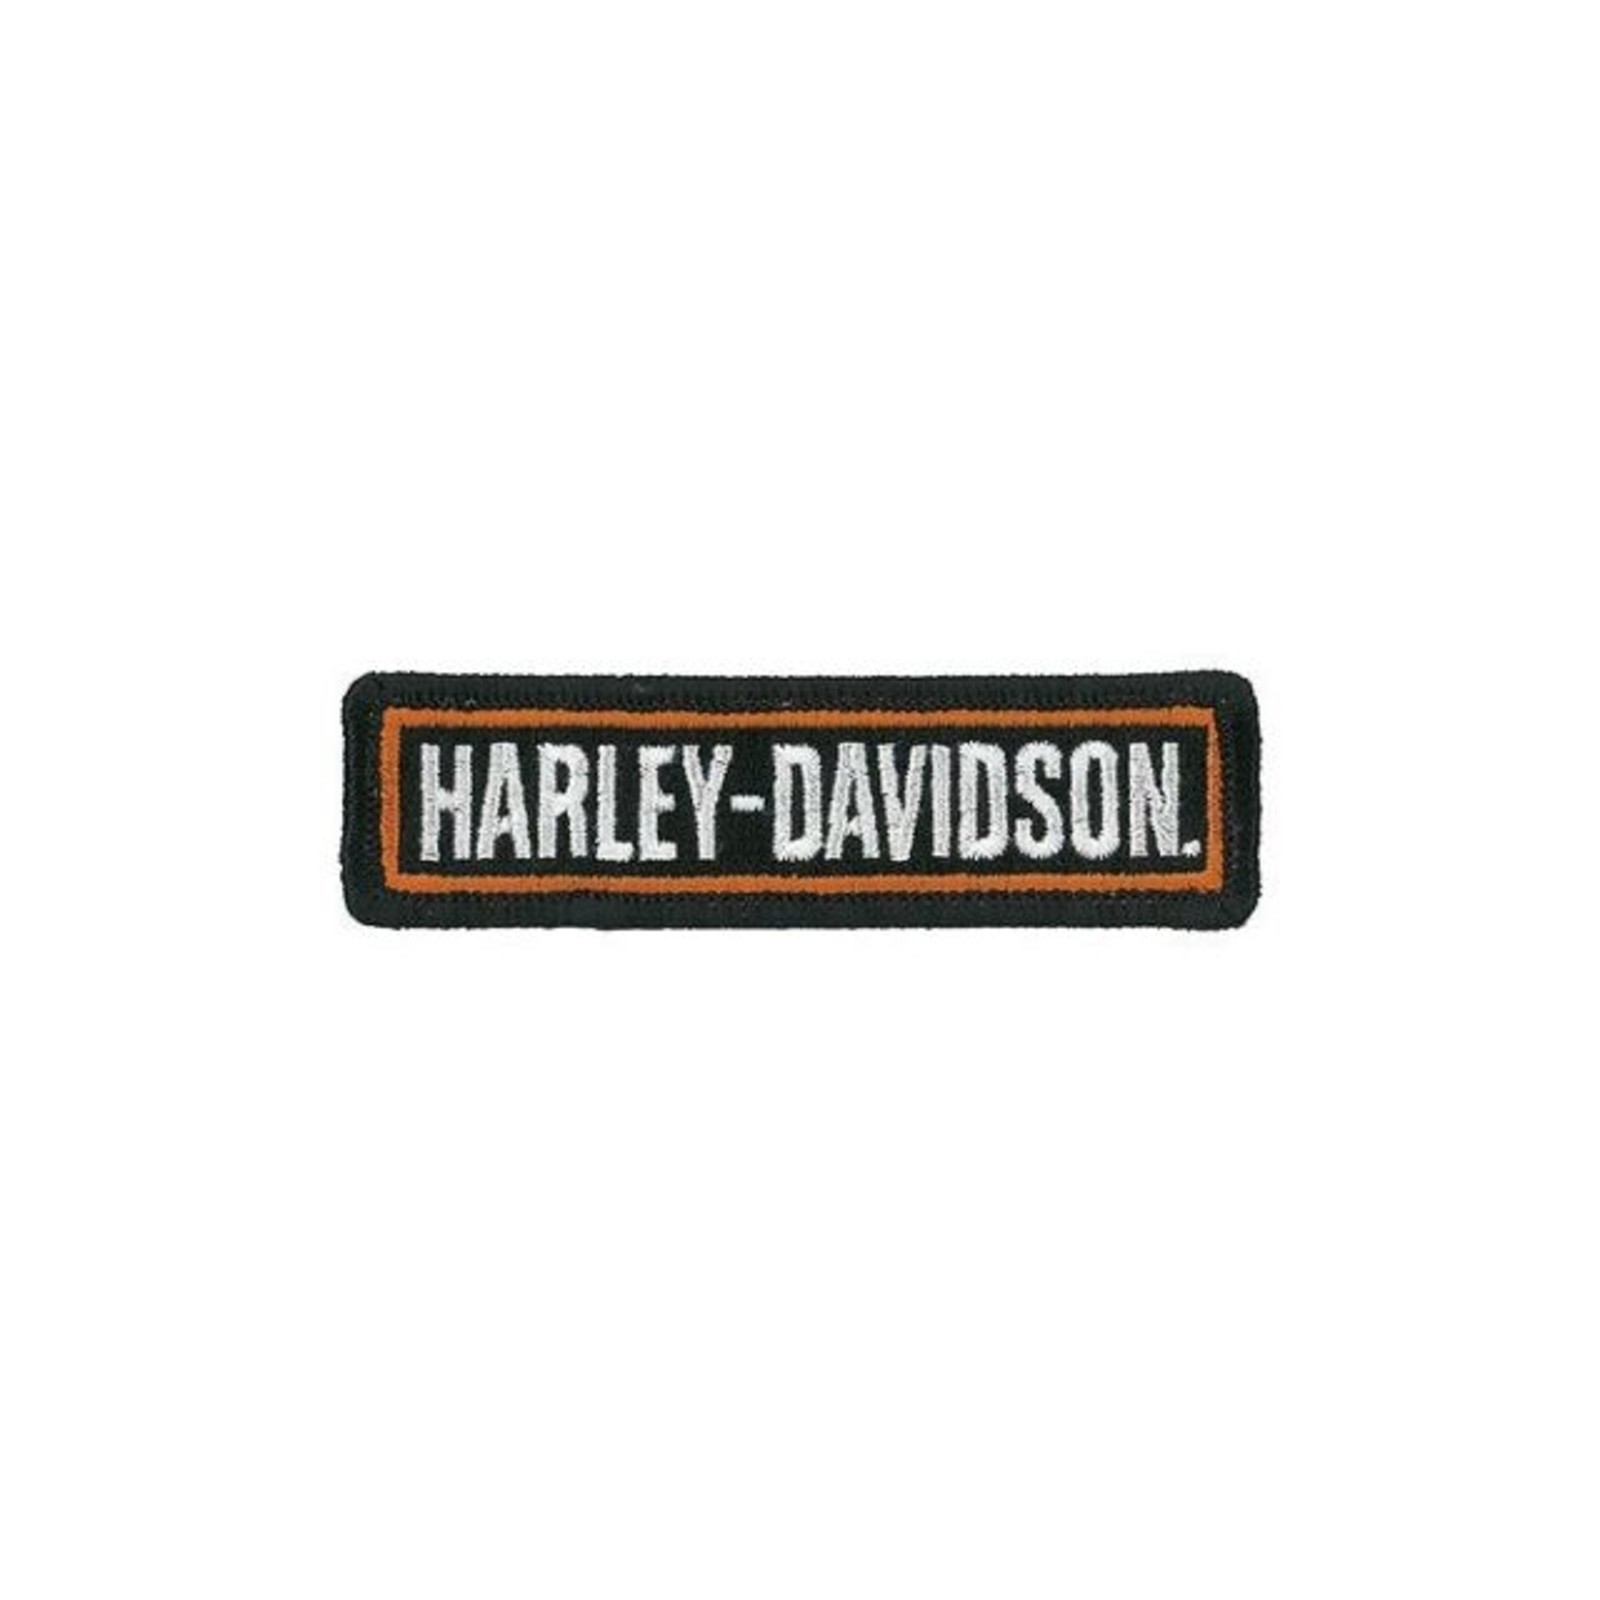 Harley Davidson Aufnäher/Patch Modell Heritage Softail Größe ca.10,0 cm x 5,1 cm